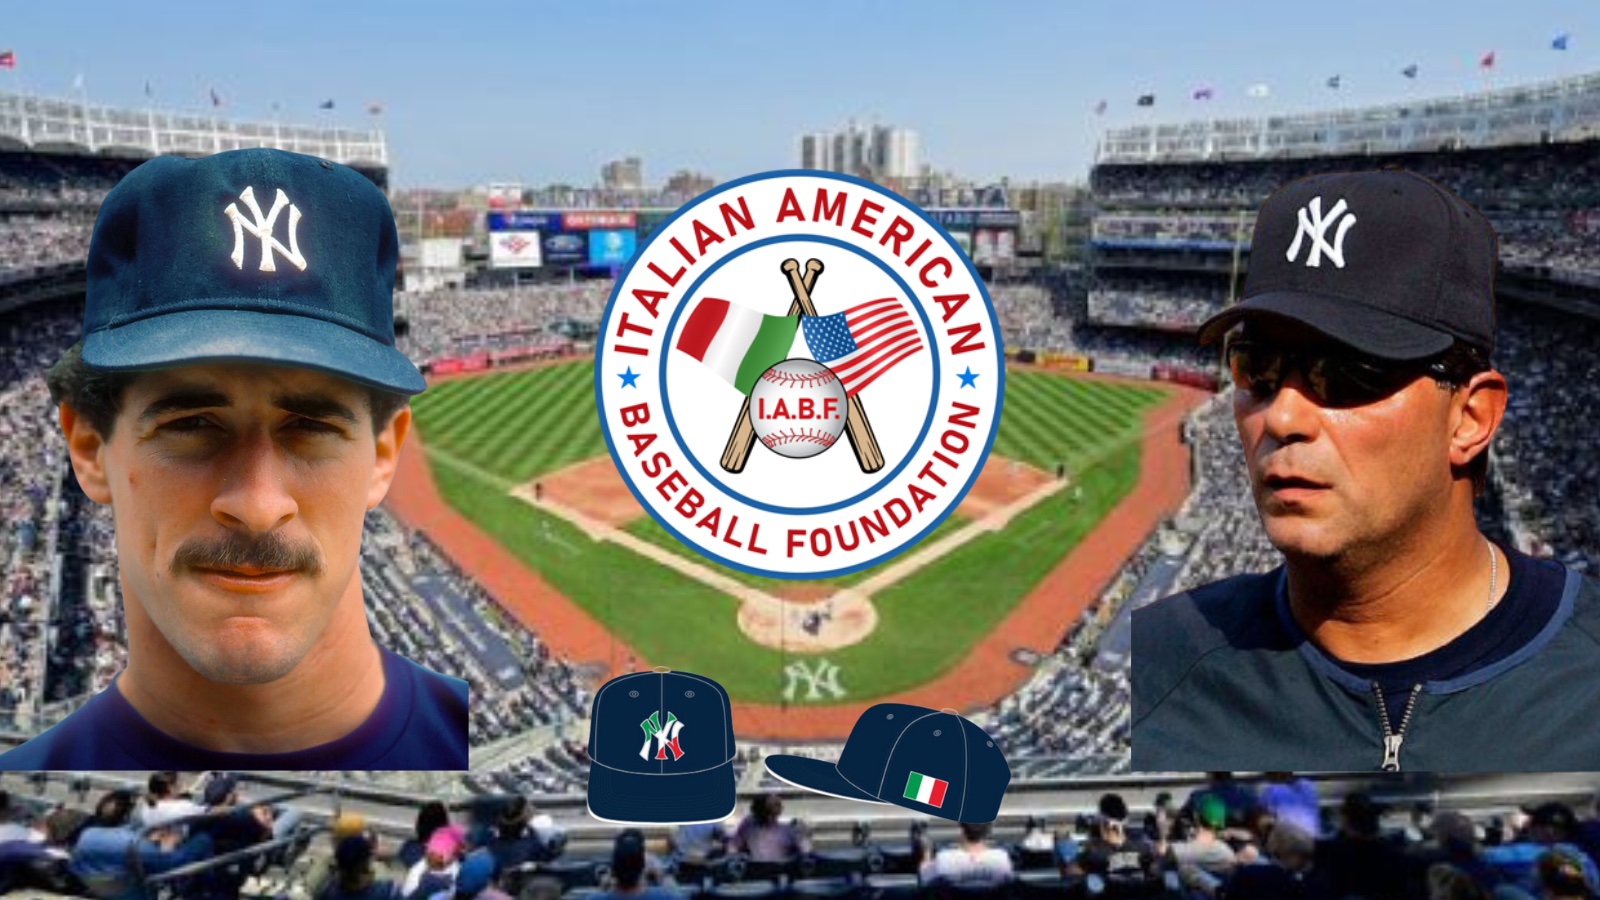 IABF Italian Heritage Night with the Yankees!